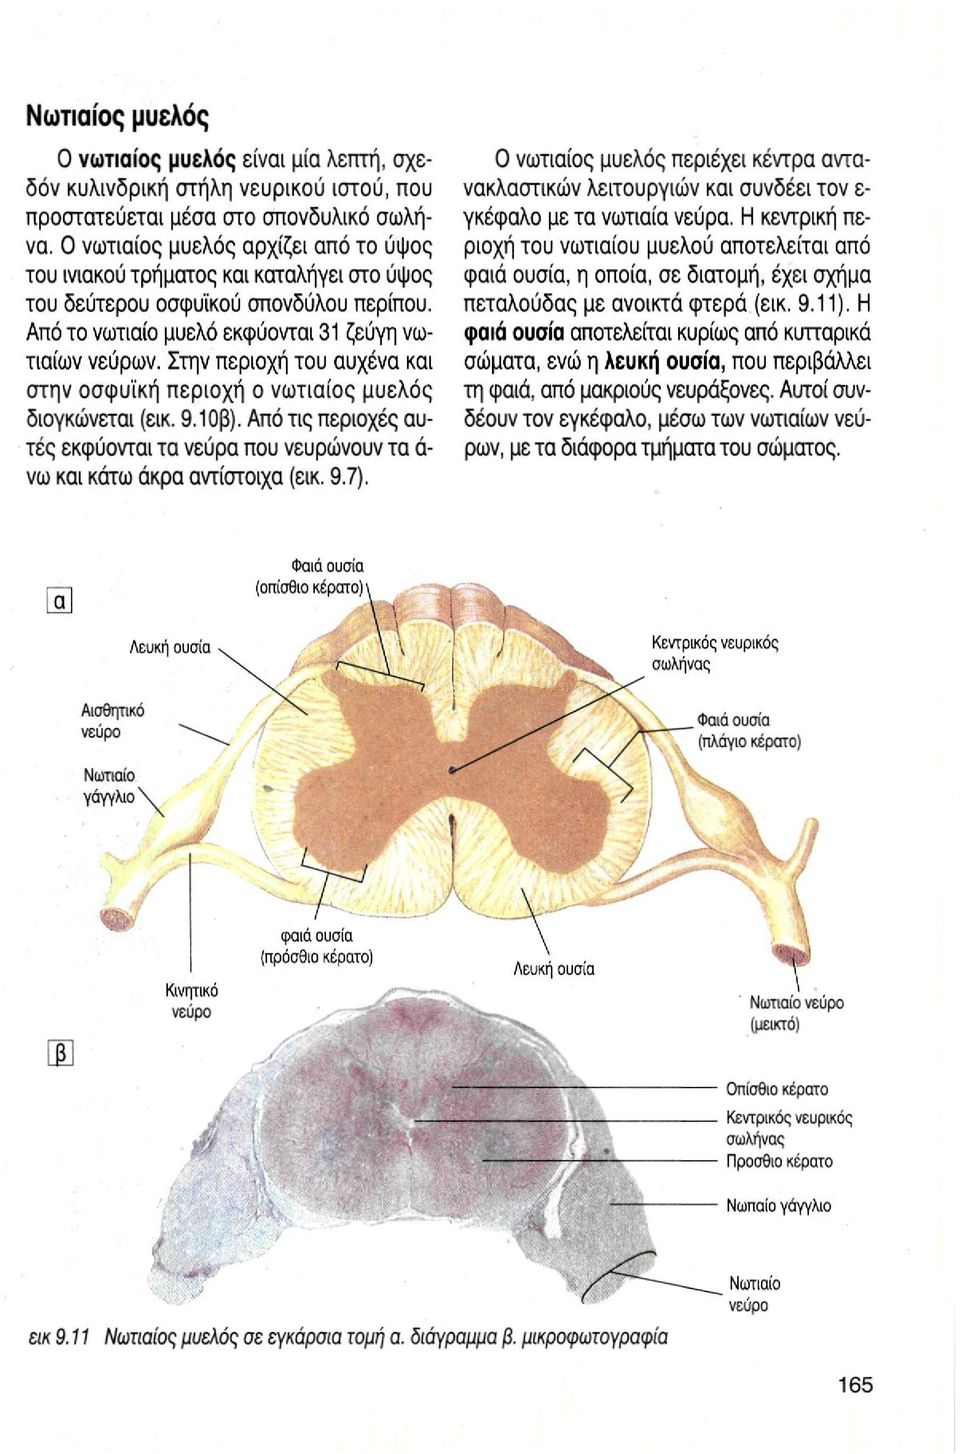 Στην περιοχή του αυχένα και στην οσφυϊκή περιοχή ο νωτιαίος μυελός διογκώνεται (εικ. 9.10β). Από τις περιοχές αυτές εκφύονται τα νεύρα που νευρώνουν τα ά- νω και κάτω άκρα αντίστοιχα (εικ. 9.7).